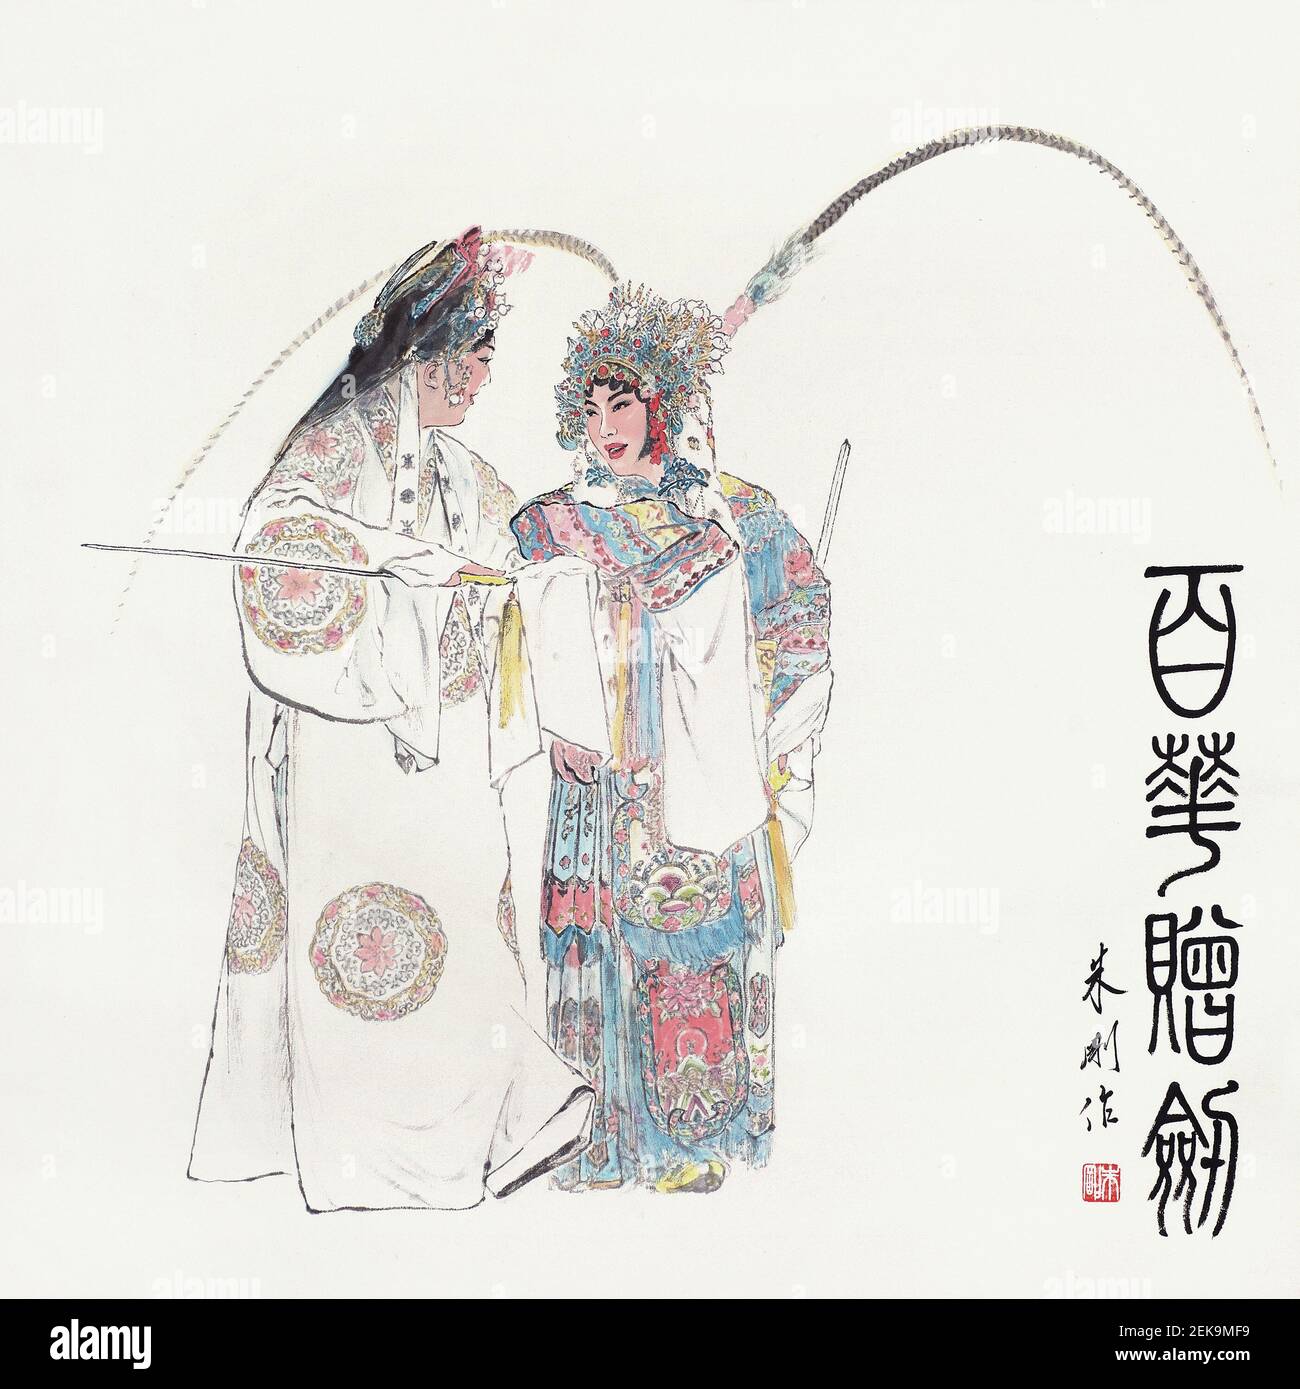 Ópera China de la artista Zhu Gang, un chino asiático moderno y contemporáneo artista de Shanghai. Regalo de una Espada en el Pabellón Baihua (Foto de Stringer/ChinaImages/Sipa USA) Foto de stock